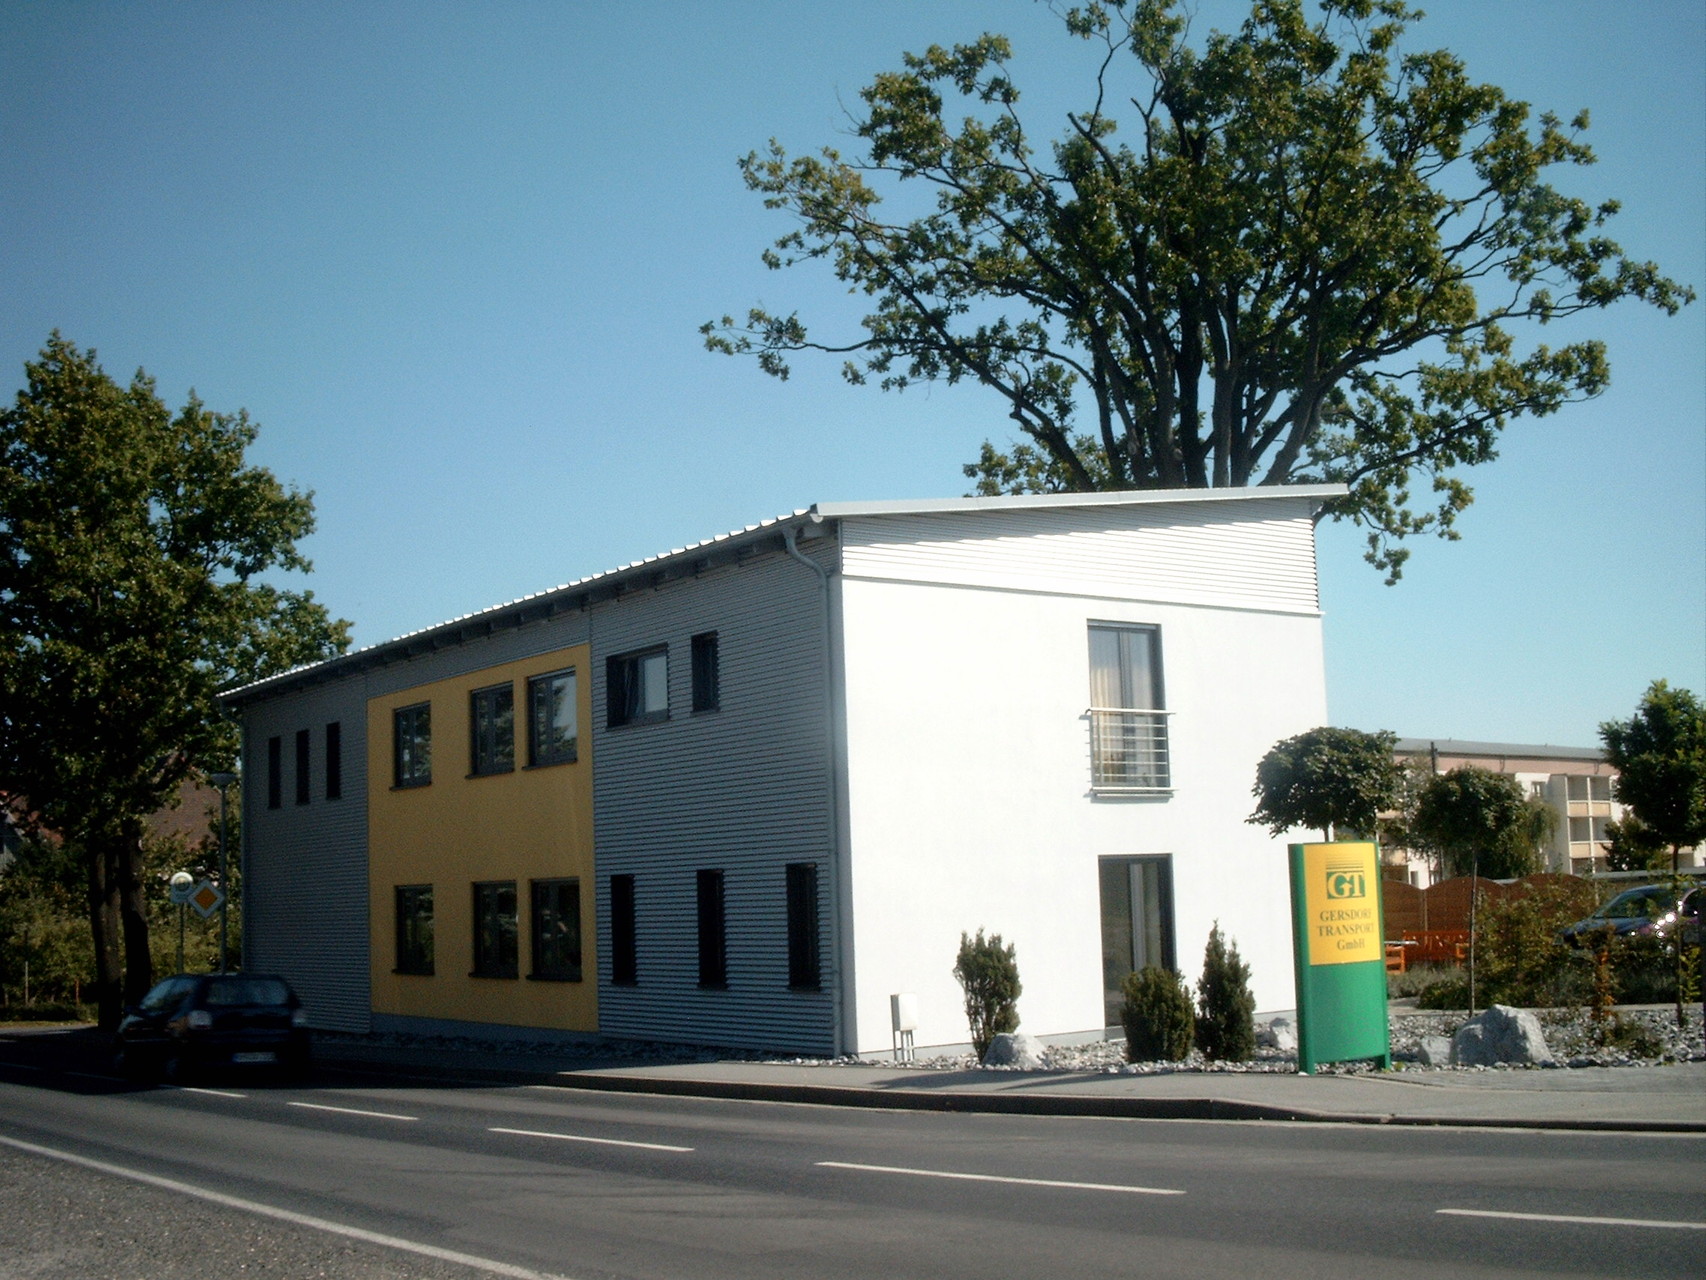 Büro- und Sozialgebäude, Haselbachtal, 2003